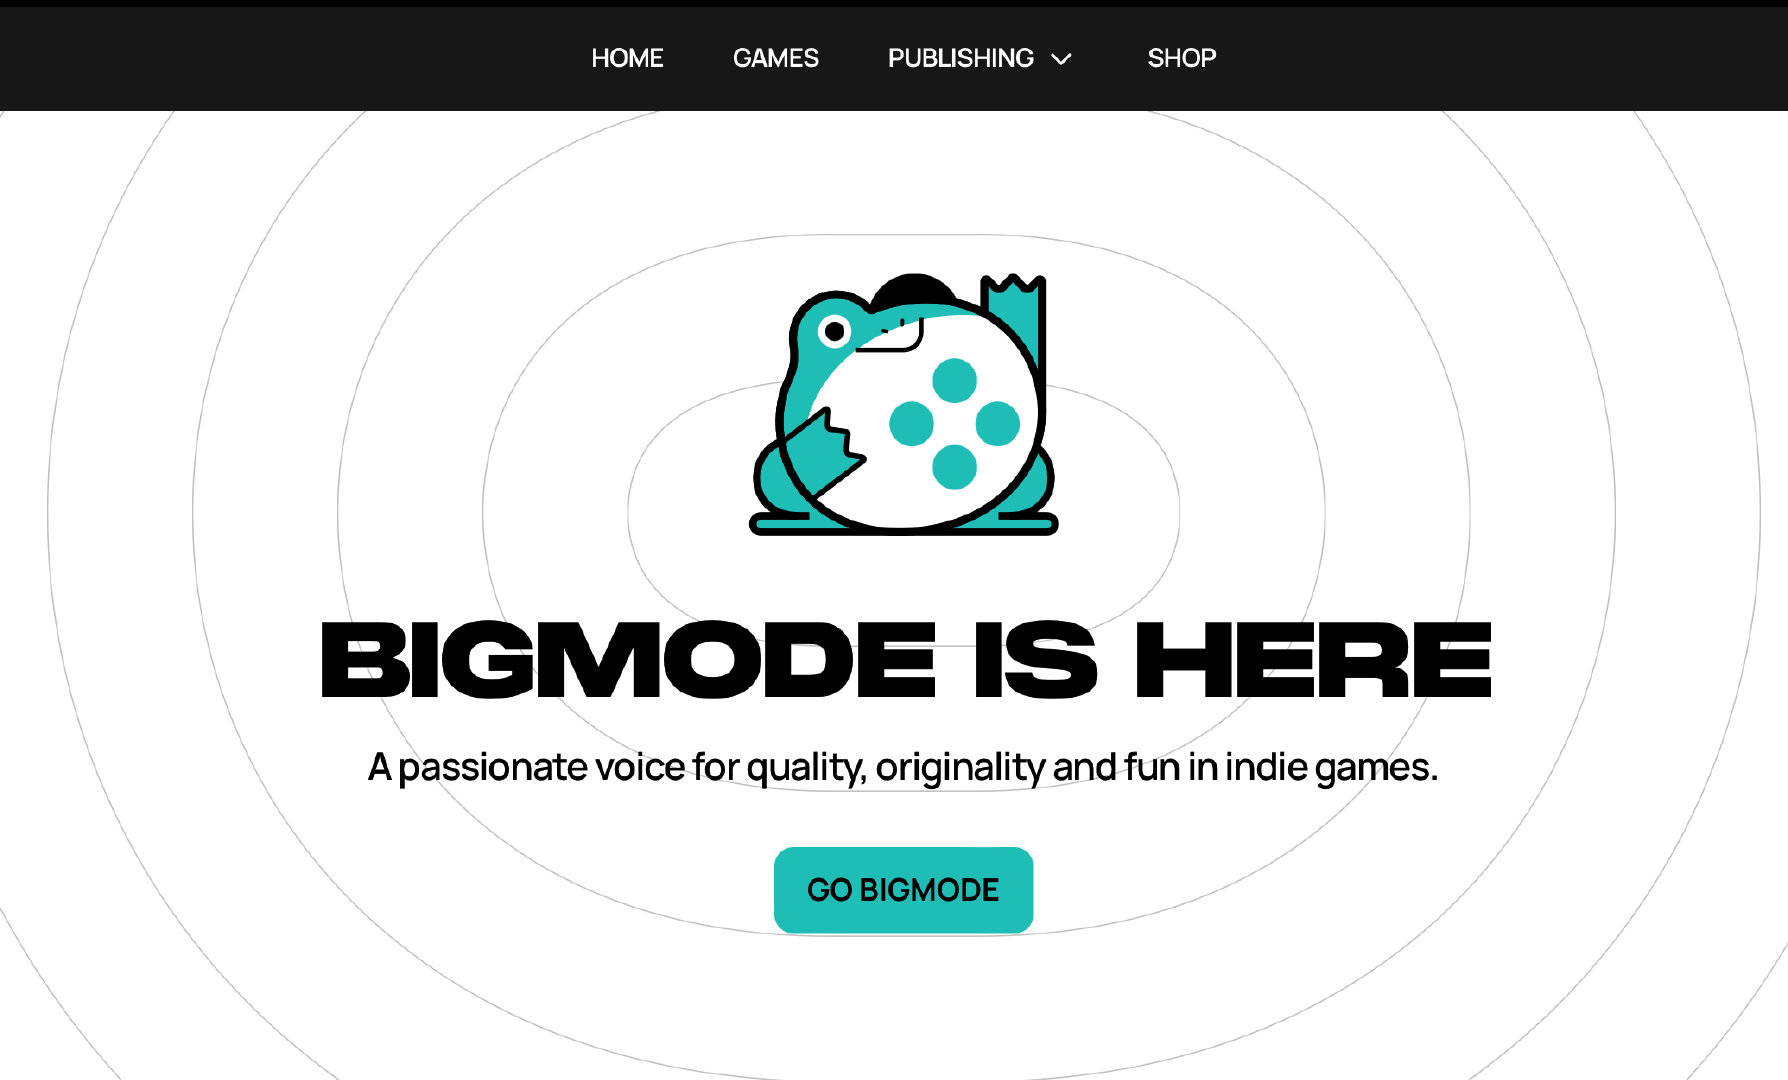 知名YouTuber游戏驴子创立 独立游戏发行公司Bigmode